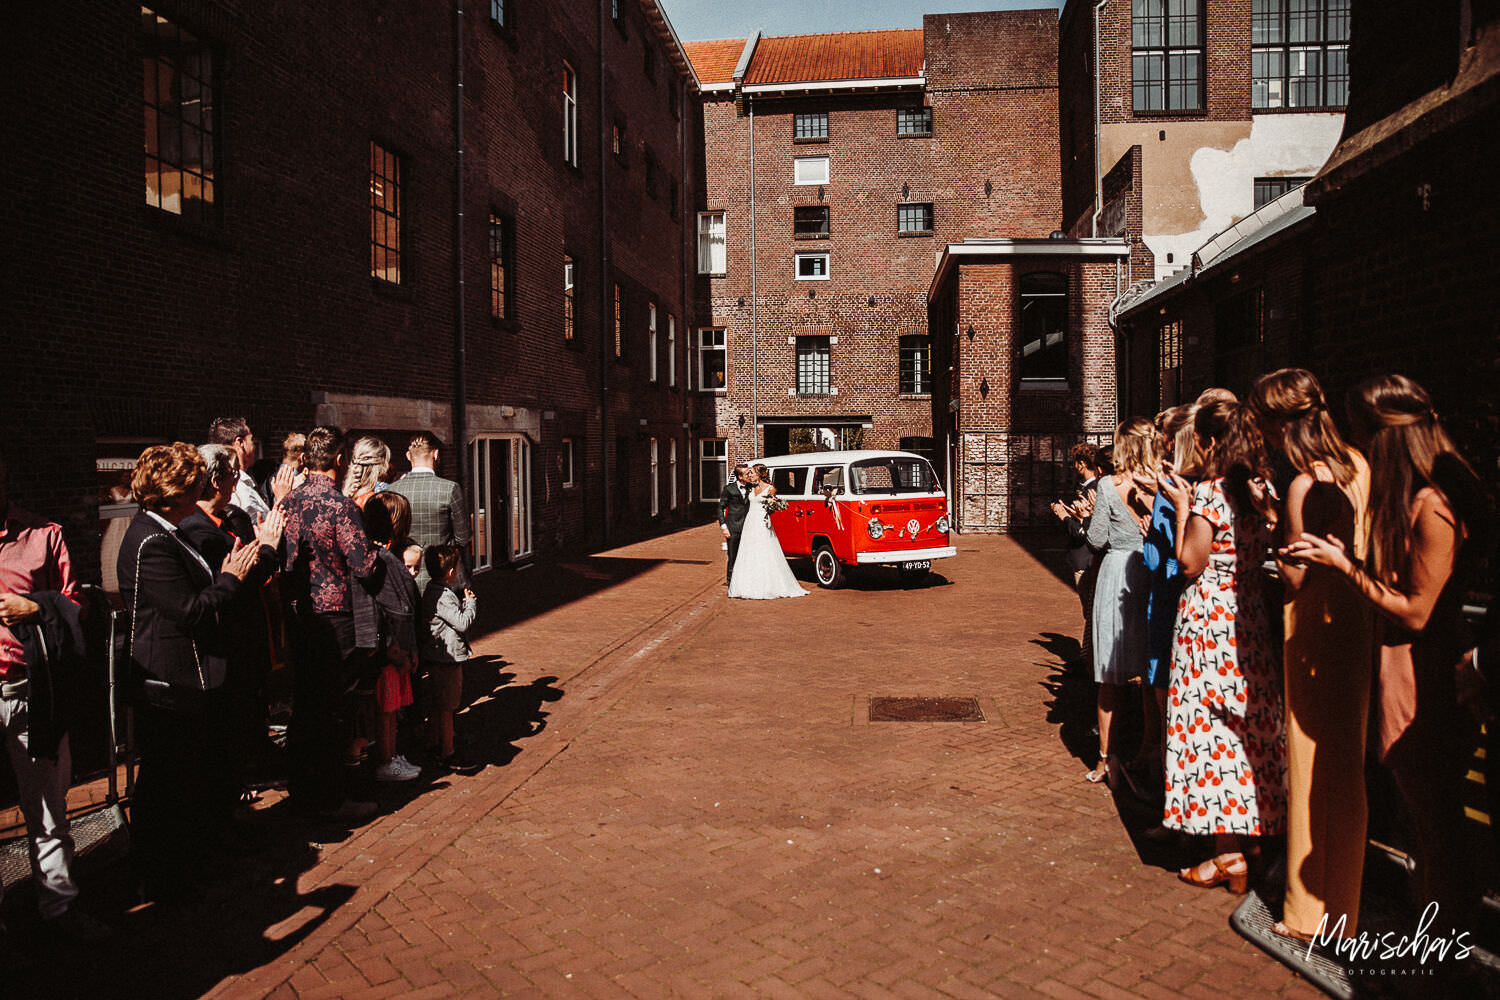 Bruidsfotograaf voor een bruidsreportage bij de cultuurfabriek ECI in Roermond